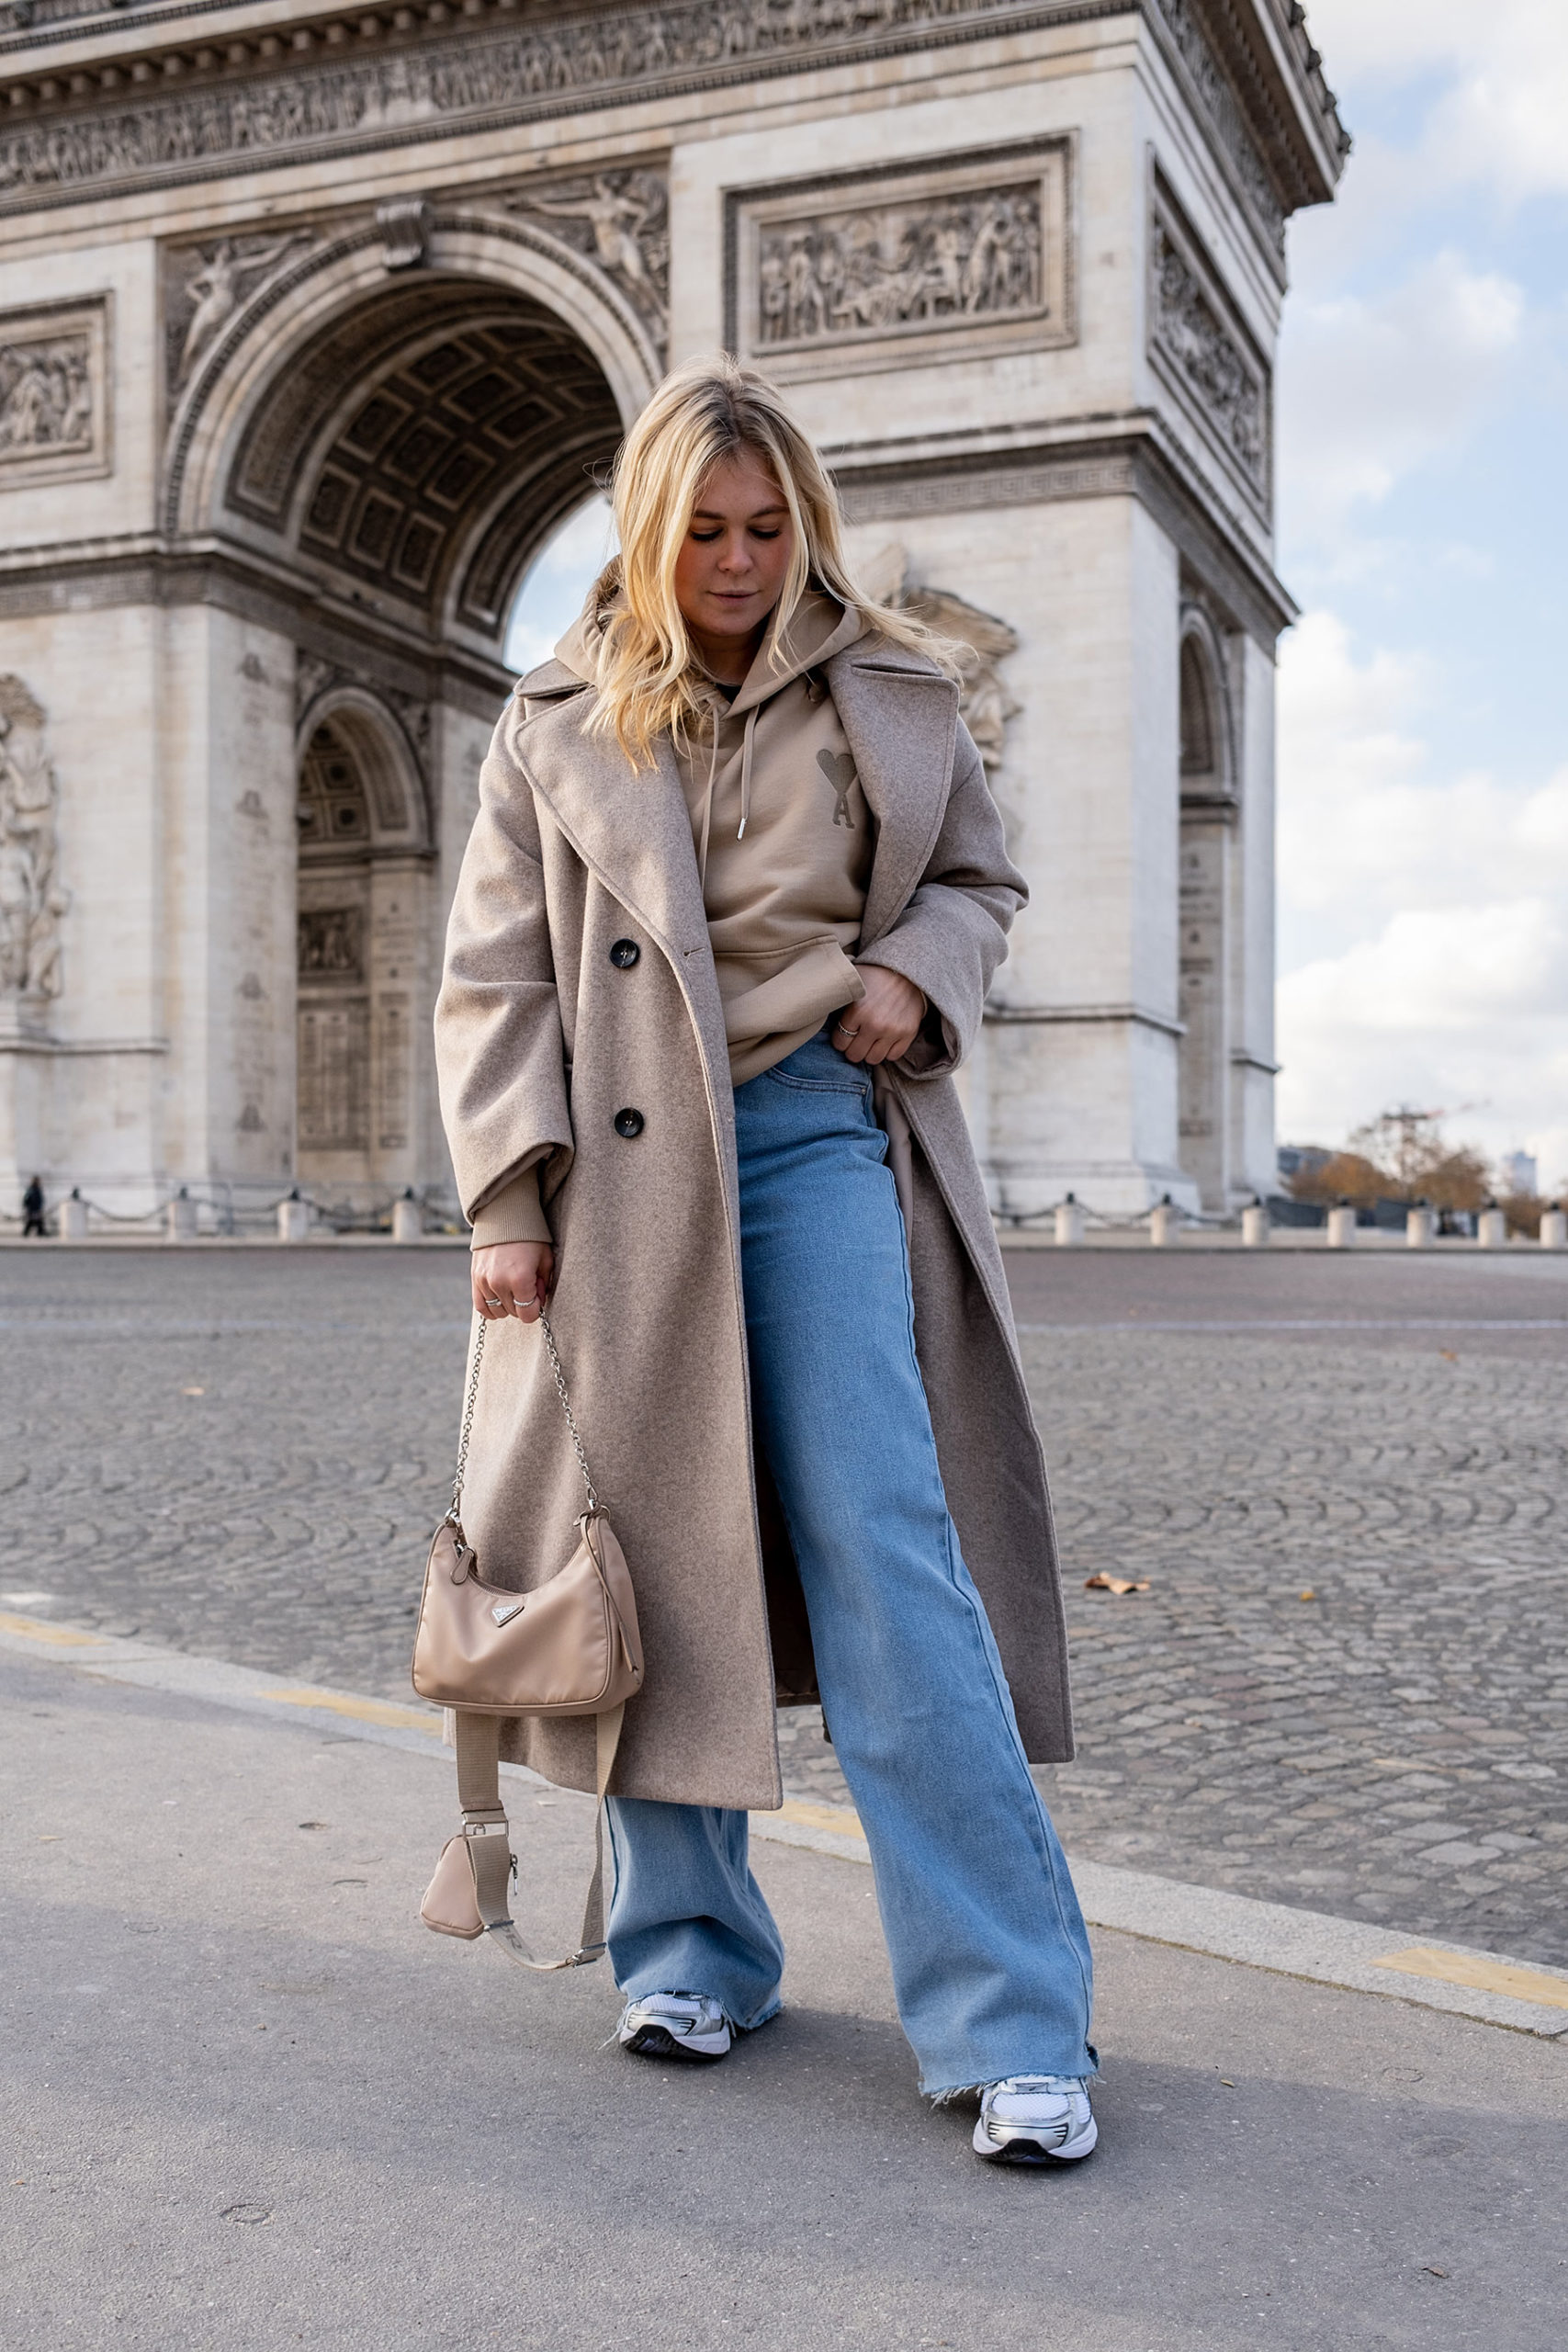 arc de triomphe instagram fotospots in paris travel blog sunnyinga